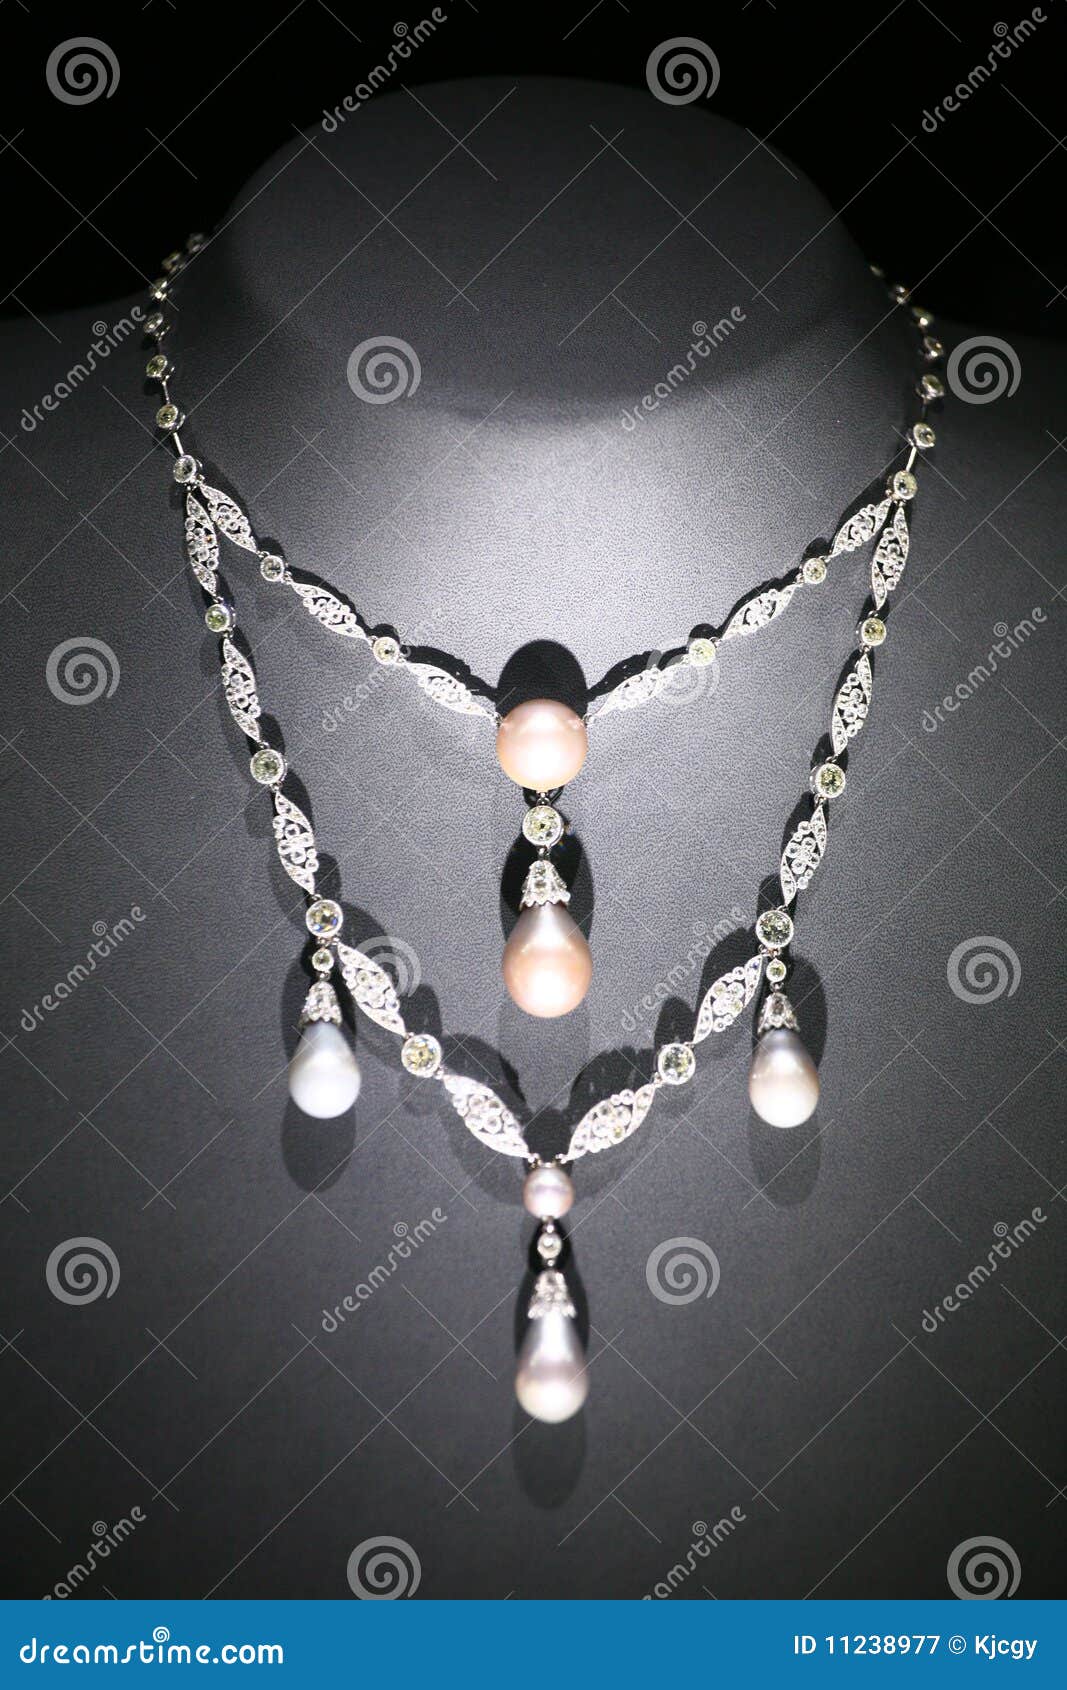 jewelry necklace